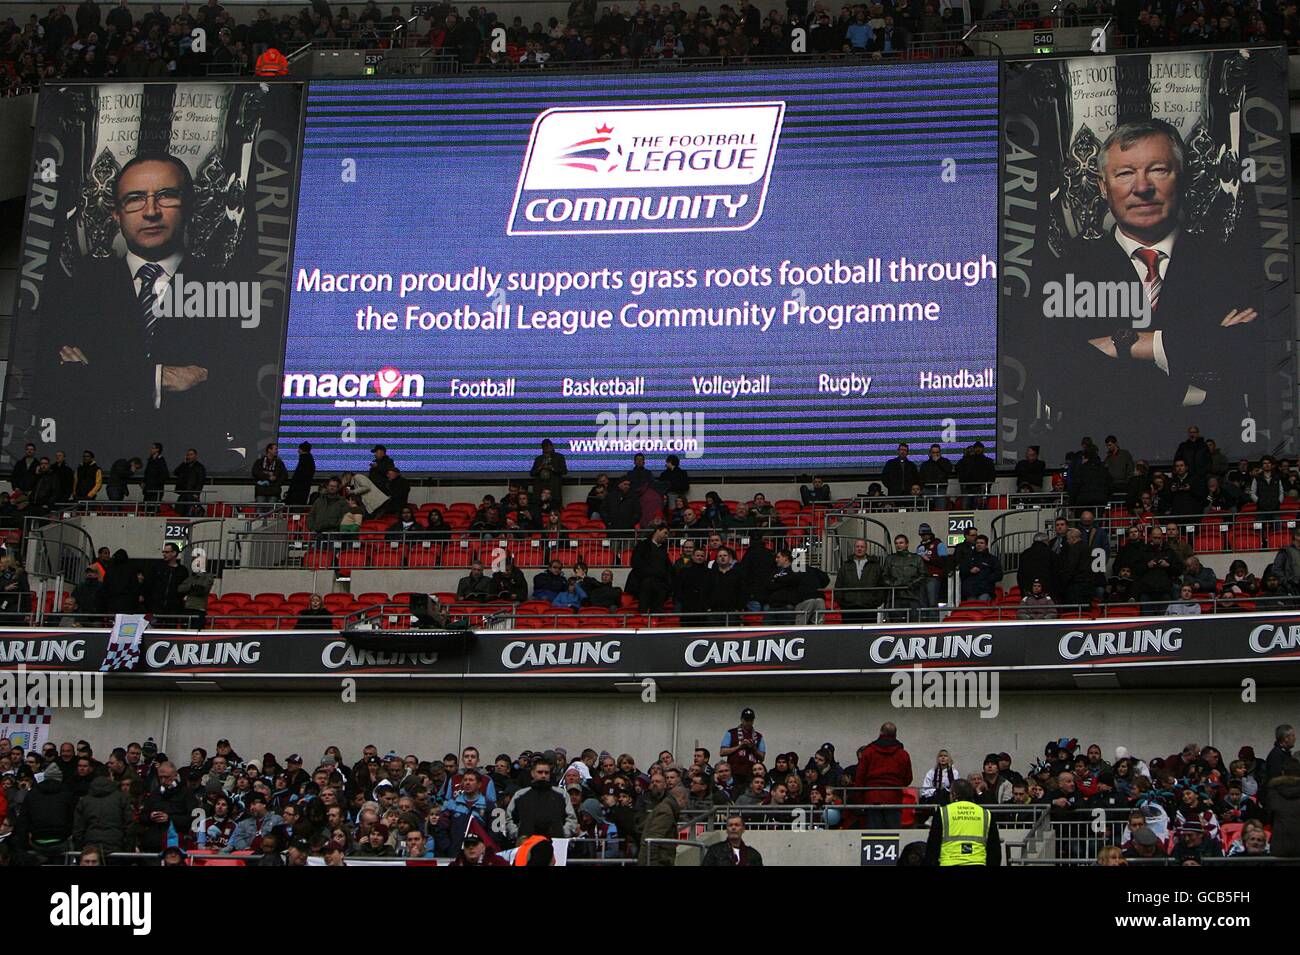 Fútbol - Copa Carling - Final - Manchester United contra Aston Villa - Wembley Stadium. La gran pantalla muestra anuncios a la mitad del tiempo Foto de stock